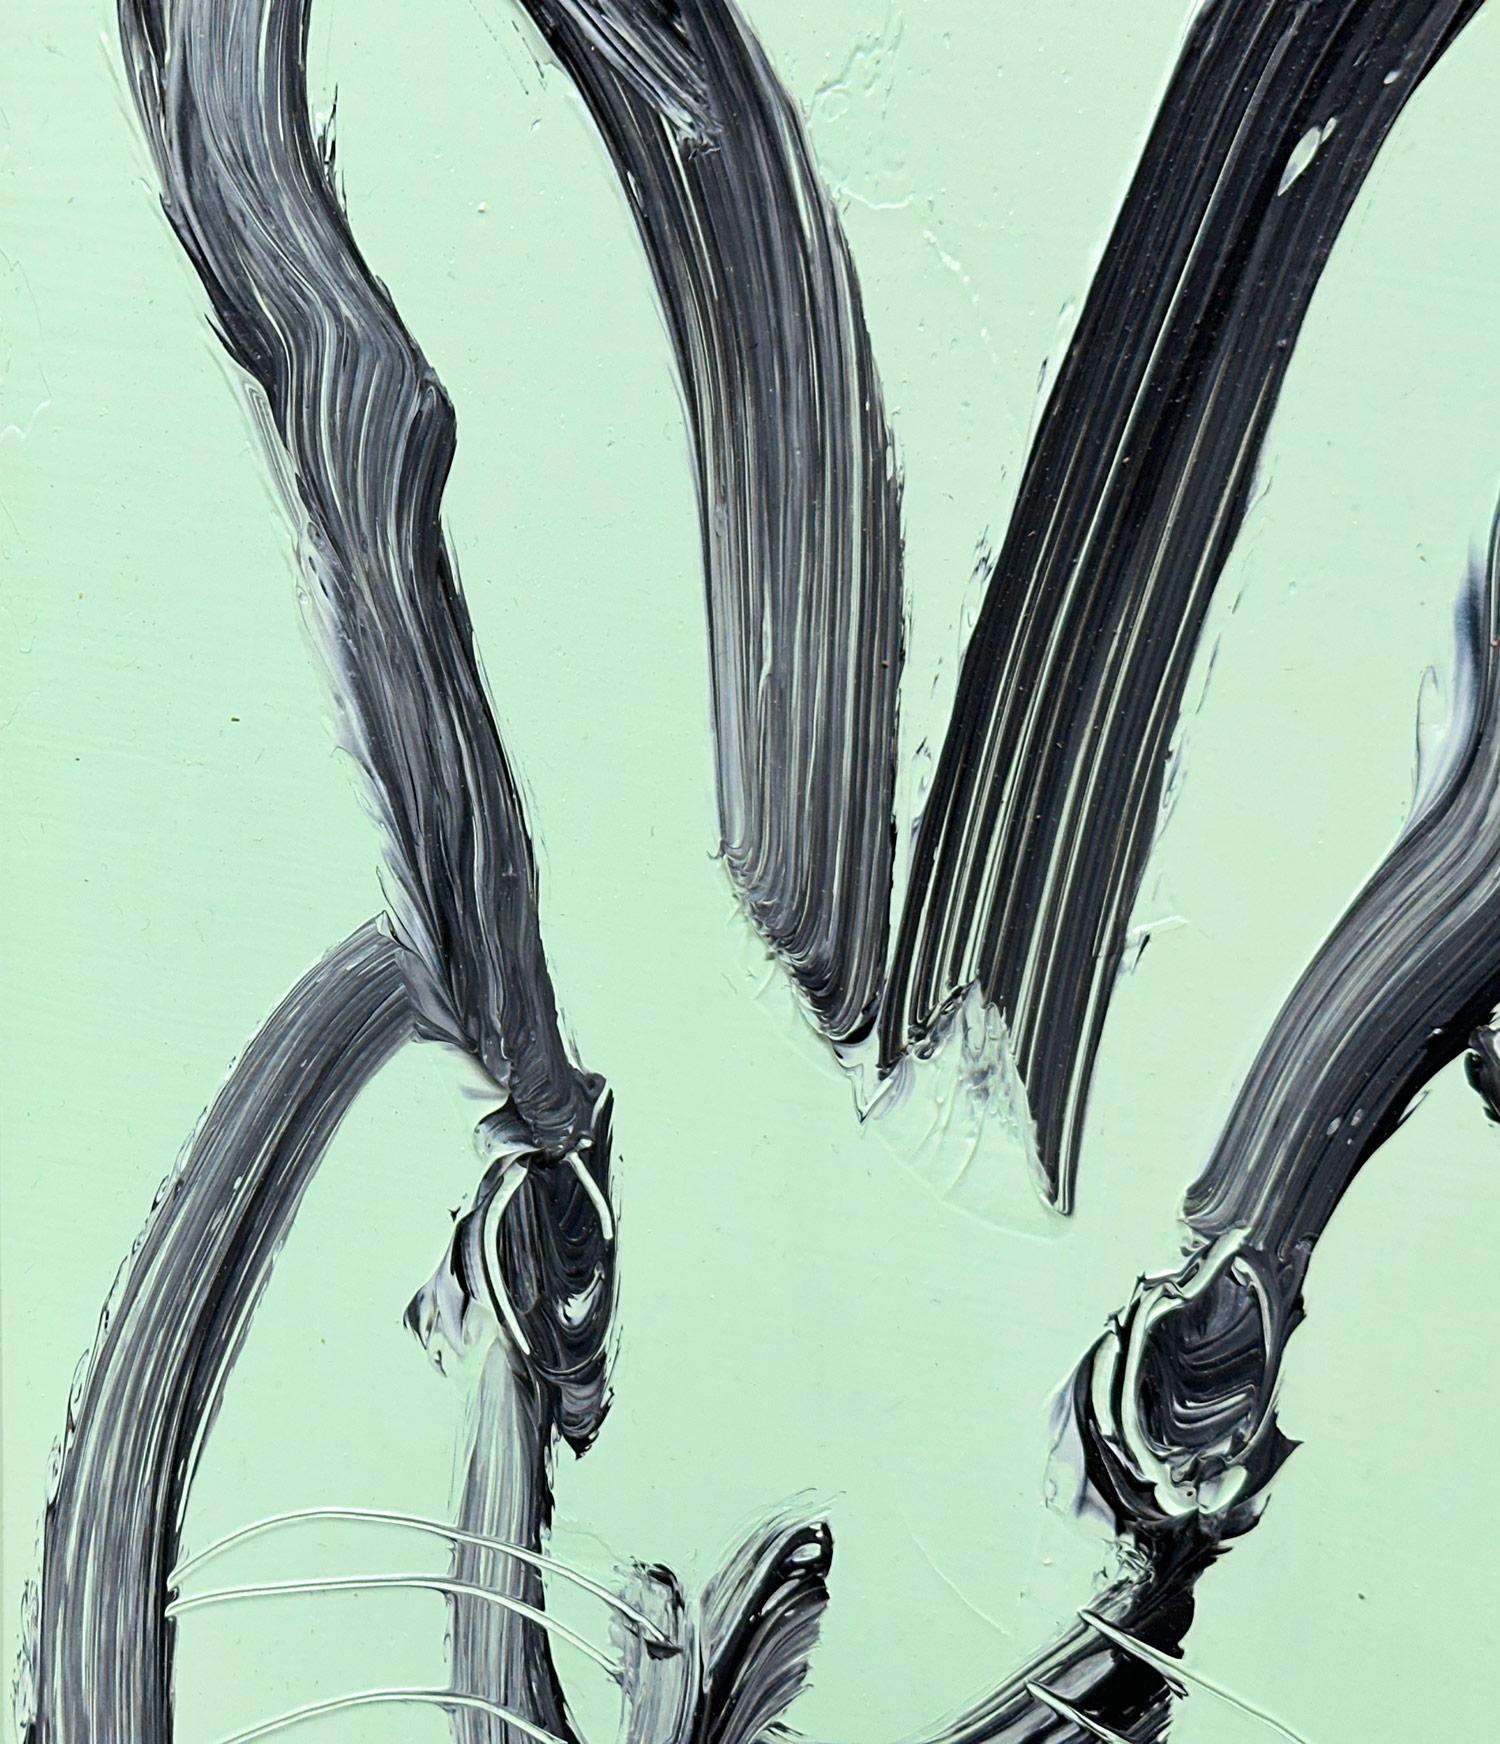 Eine wunderbare Komposition eines der ikonischsten Themen von Slonem, nämlich Hasen. Diese Arbeit zeigt eine gestische Figur eines schwarzen Hasen auf einem Aqua Mist blauen Hintergrund mit dickem Farbauftrag. Es ist in einem wunderschönen